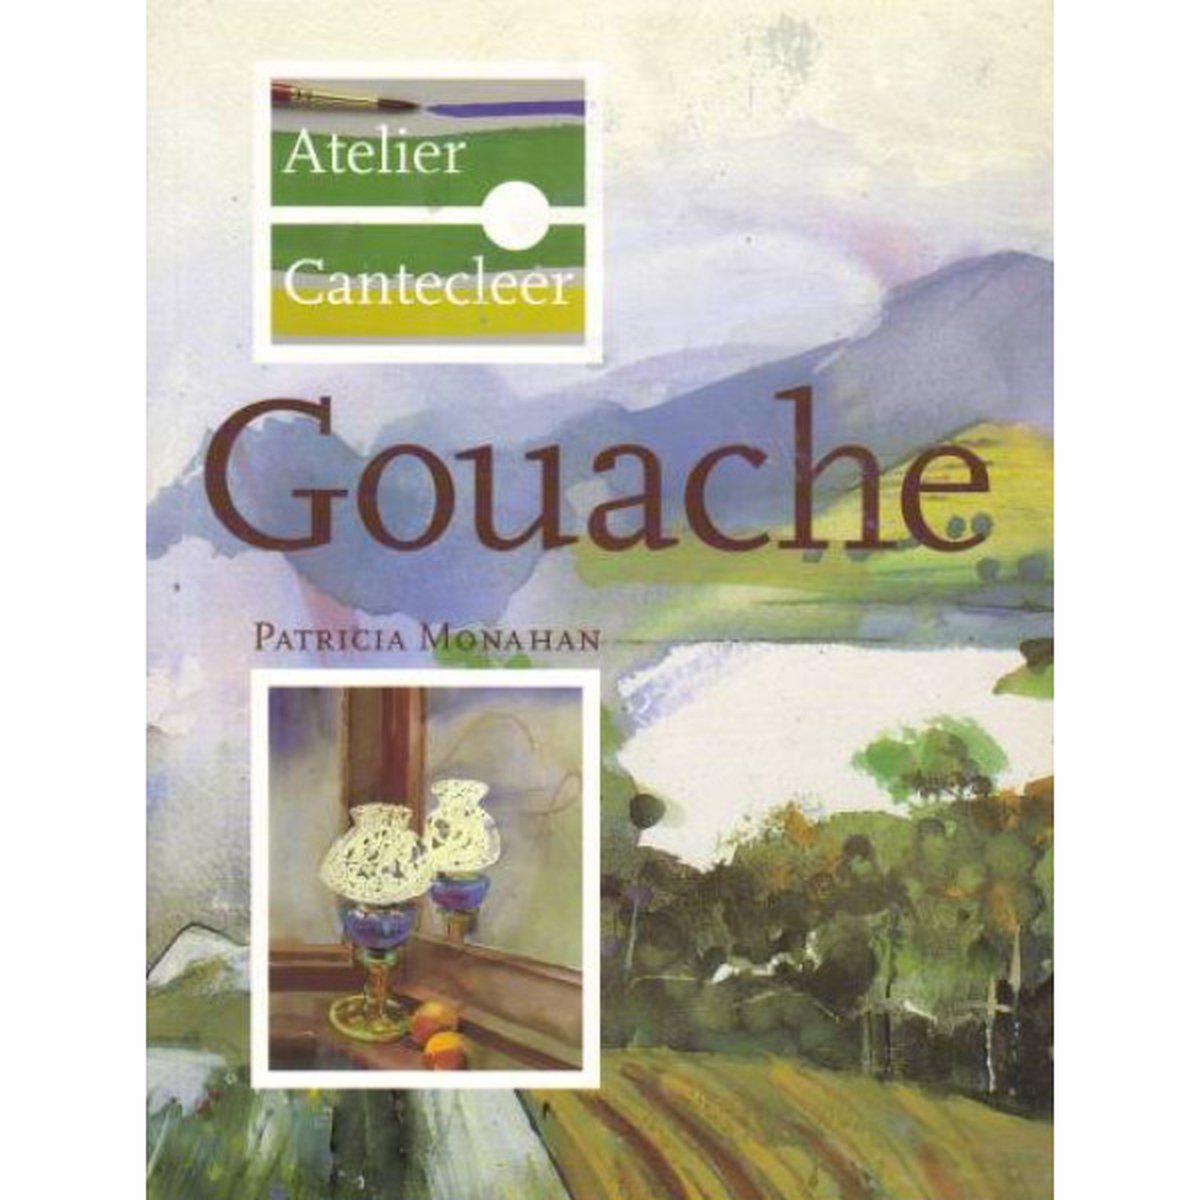 Gouache / Atelier Cantecleer